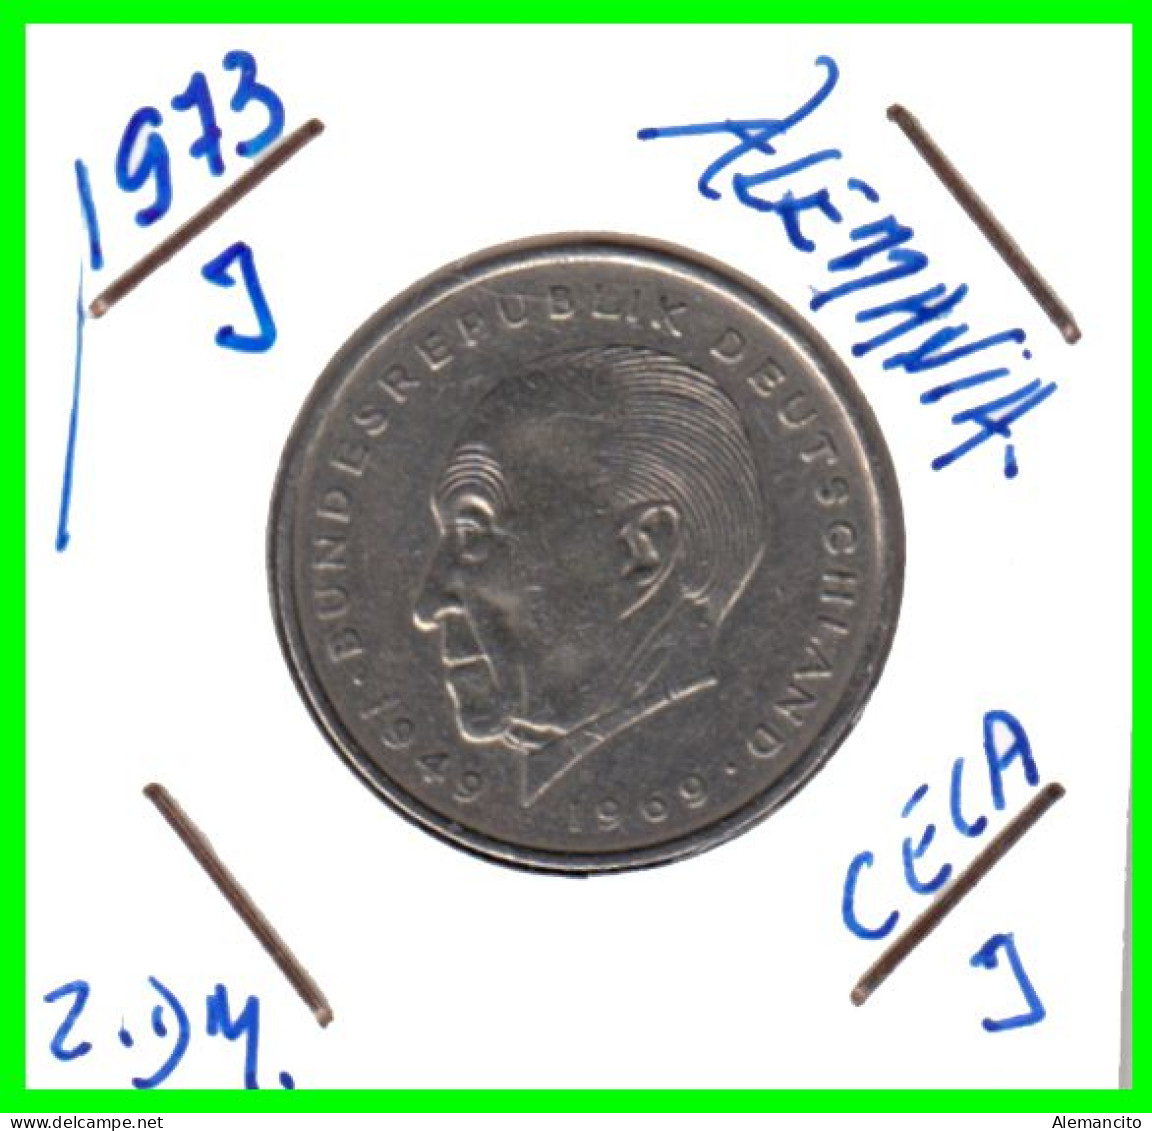 COIN ALEMANIA ( GERMANY ) MONEDA DE 2.00 DM AÑO 1973 CECA-J - HAMBURG - KONRAD ADENAUER NÍQUEL- 26,75 MM CIRCULADA - 2 Mark